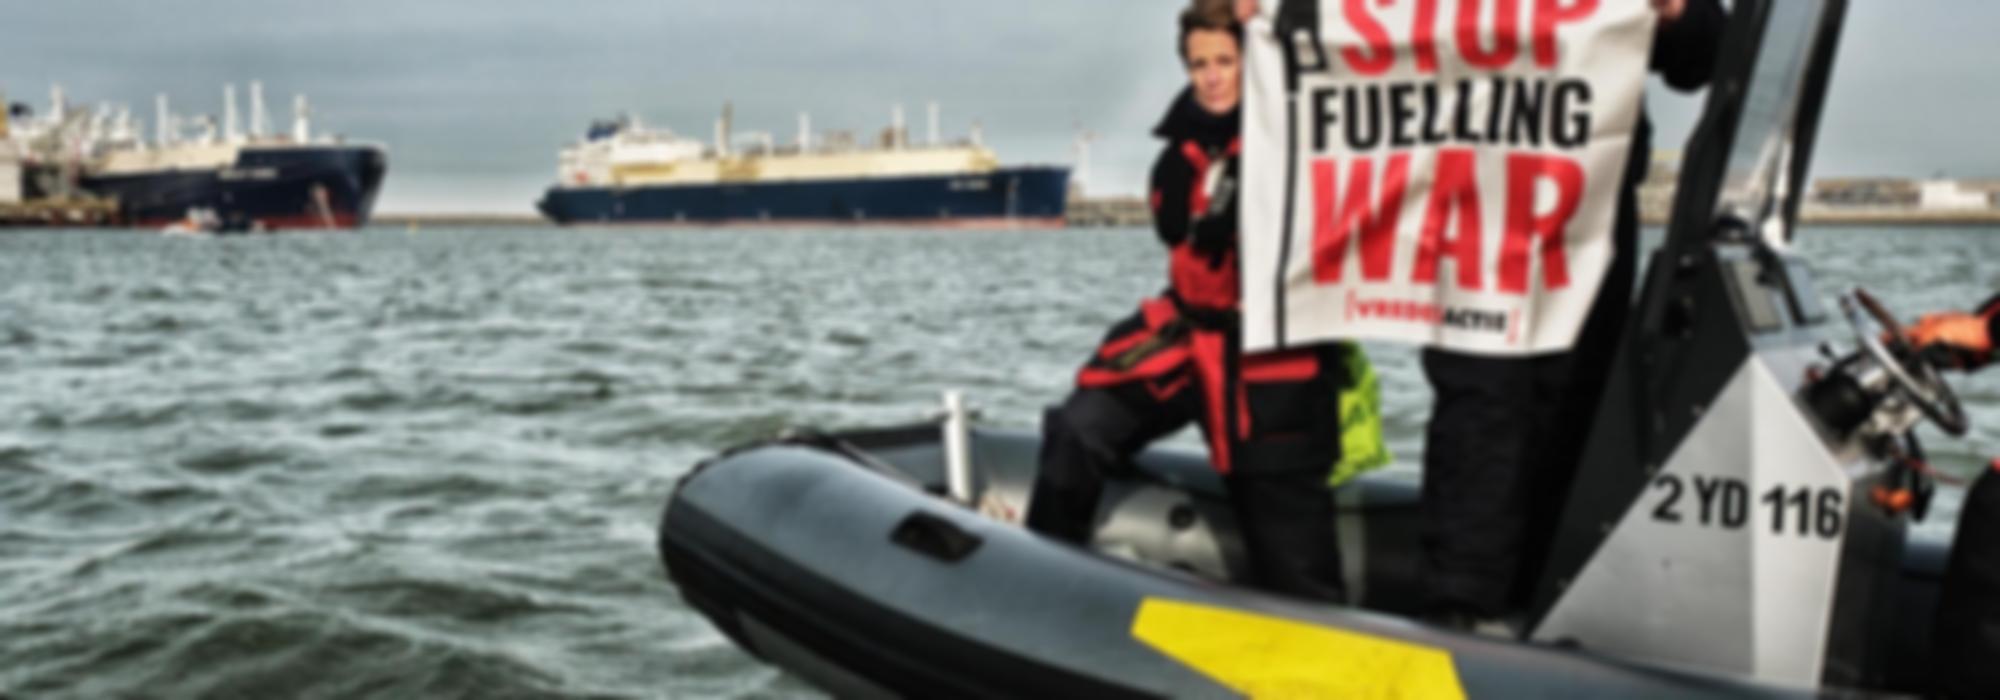 activist met banner stop fuelling war voor 2 gigantische LNG tankers in de haven van zeebrugge